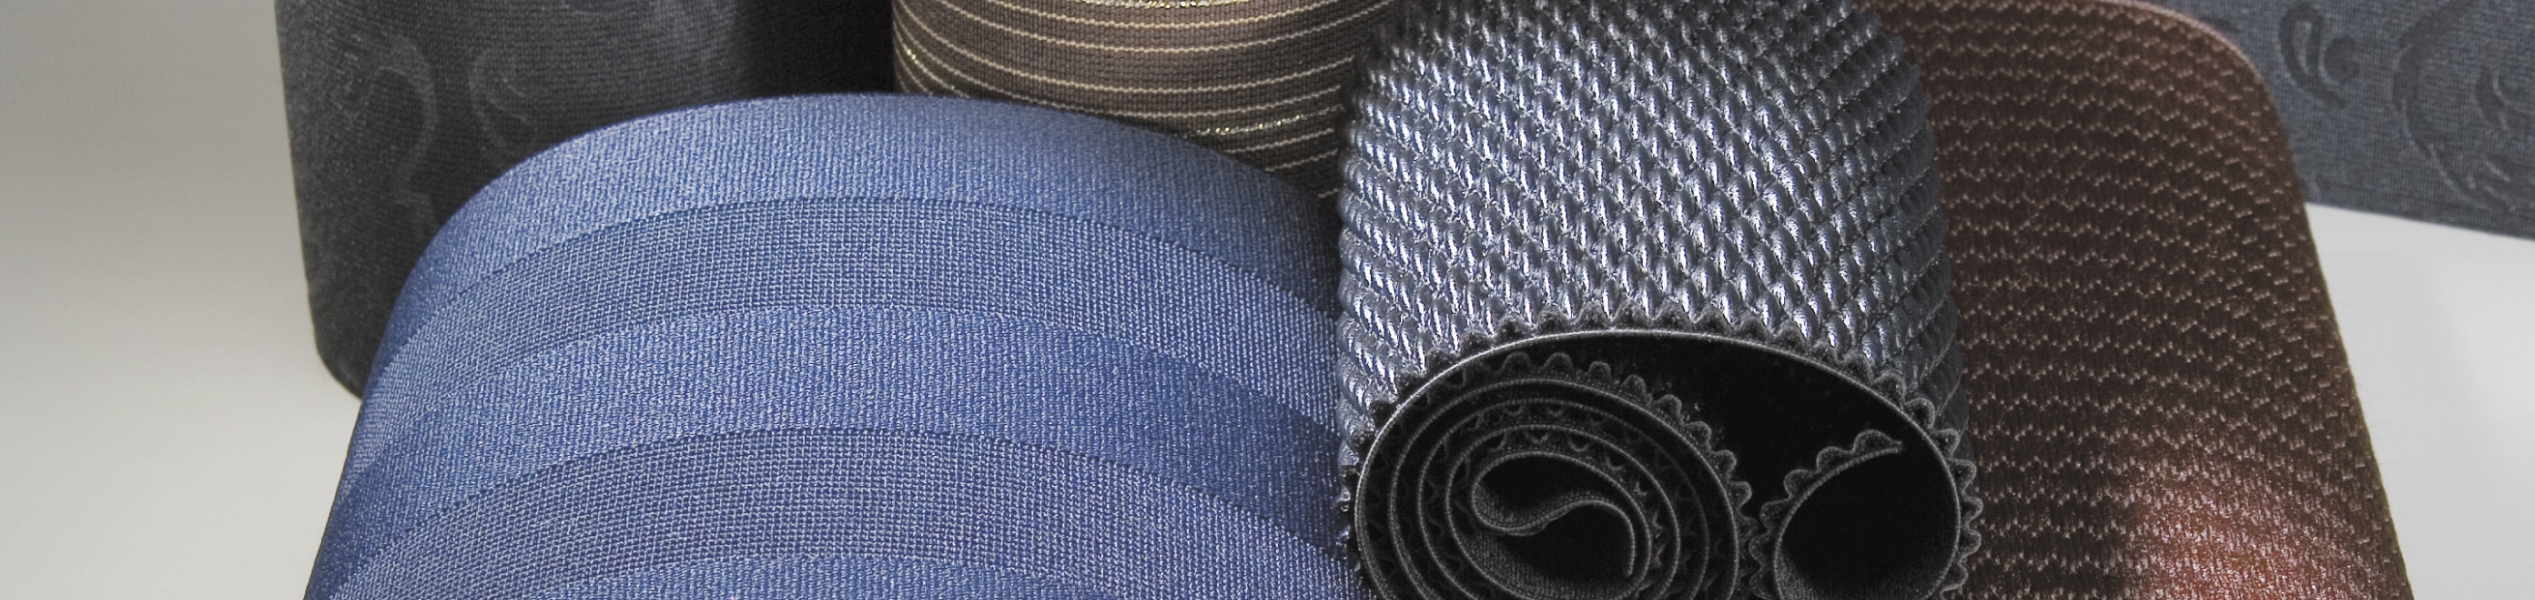 Made in Italy: nastri elastici e rigidi per calzatura, abbigliamento, pelletteria e industria